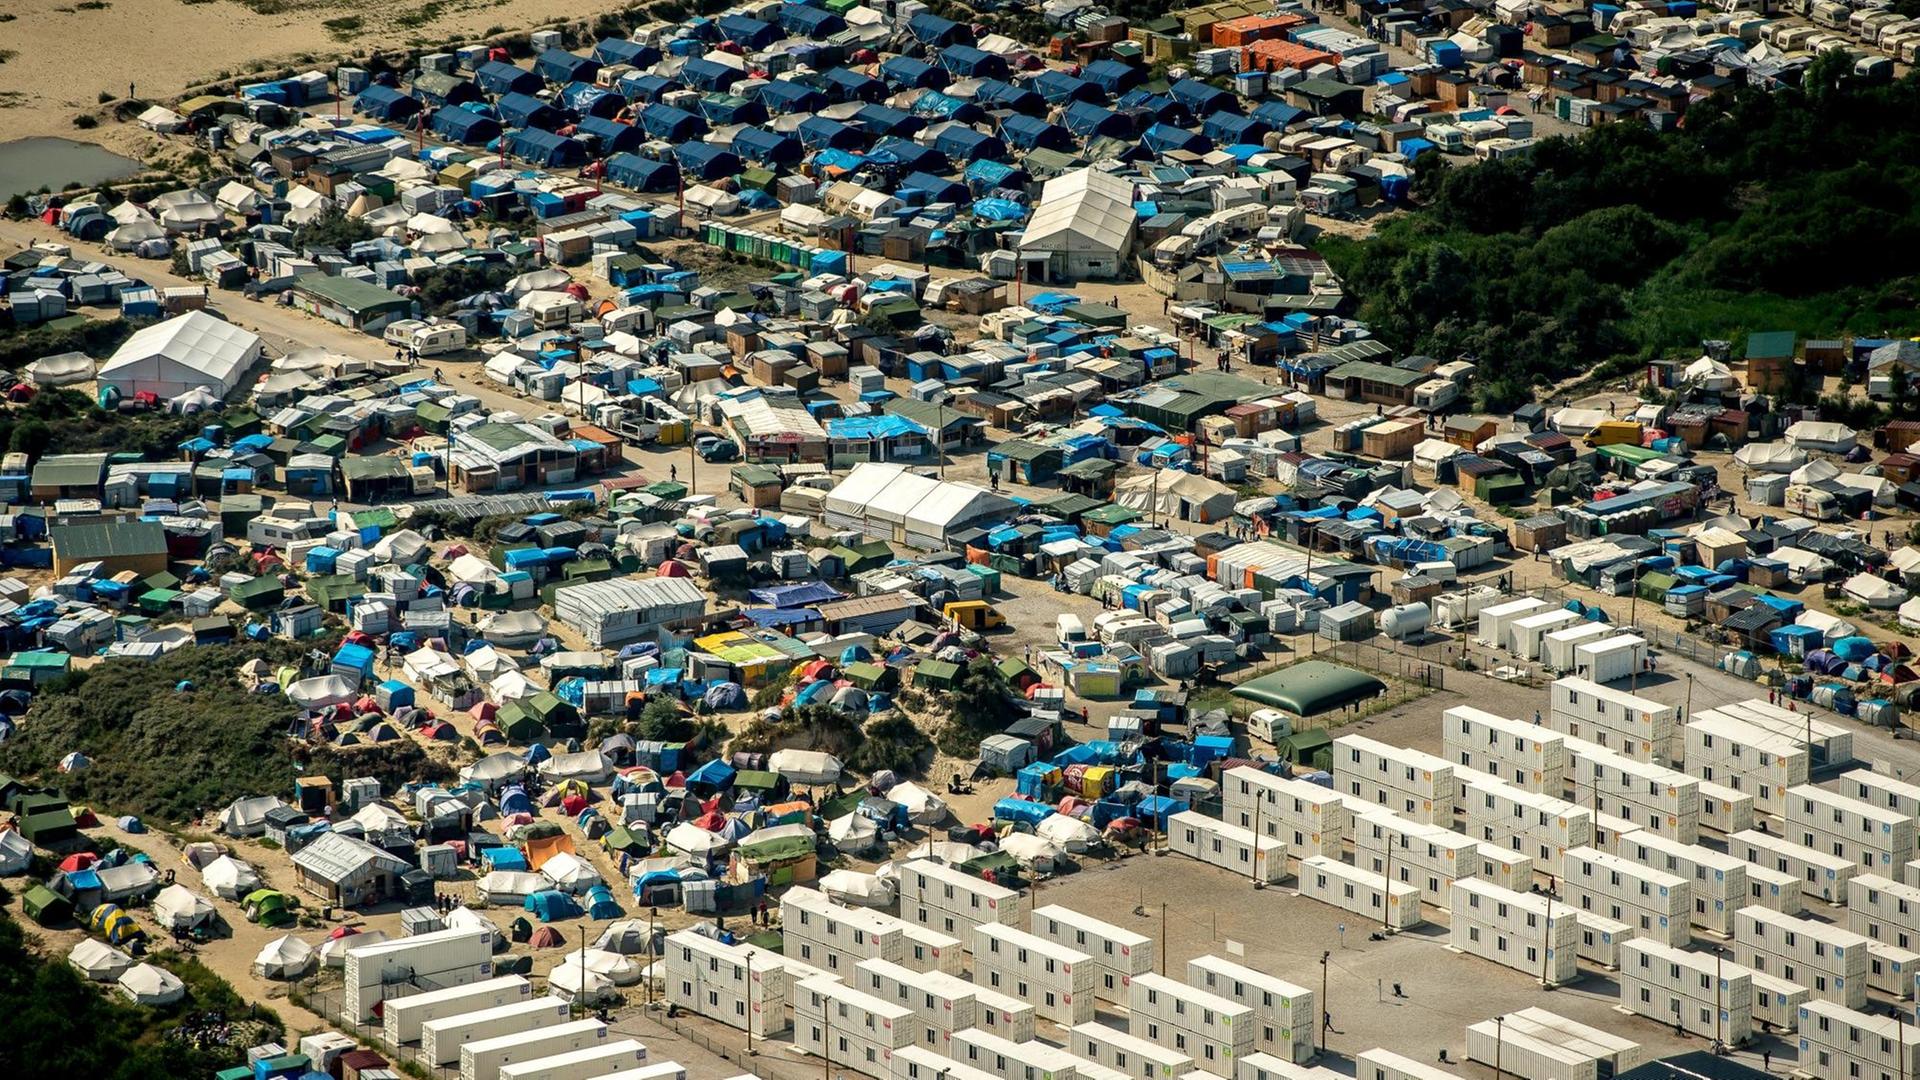 Blick auf das Flüchtlingslager in Calais, das auch als "Dschungel" bezeichnet wird, im August 2016.